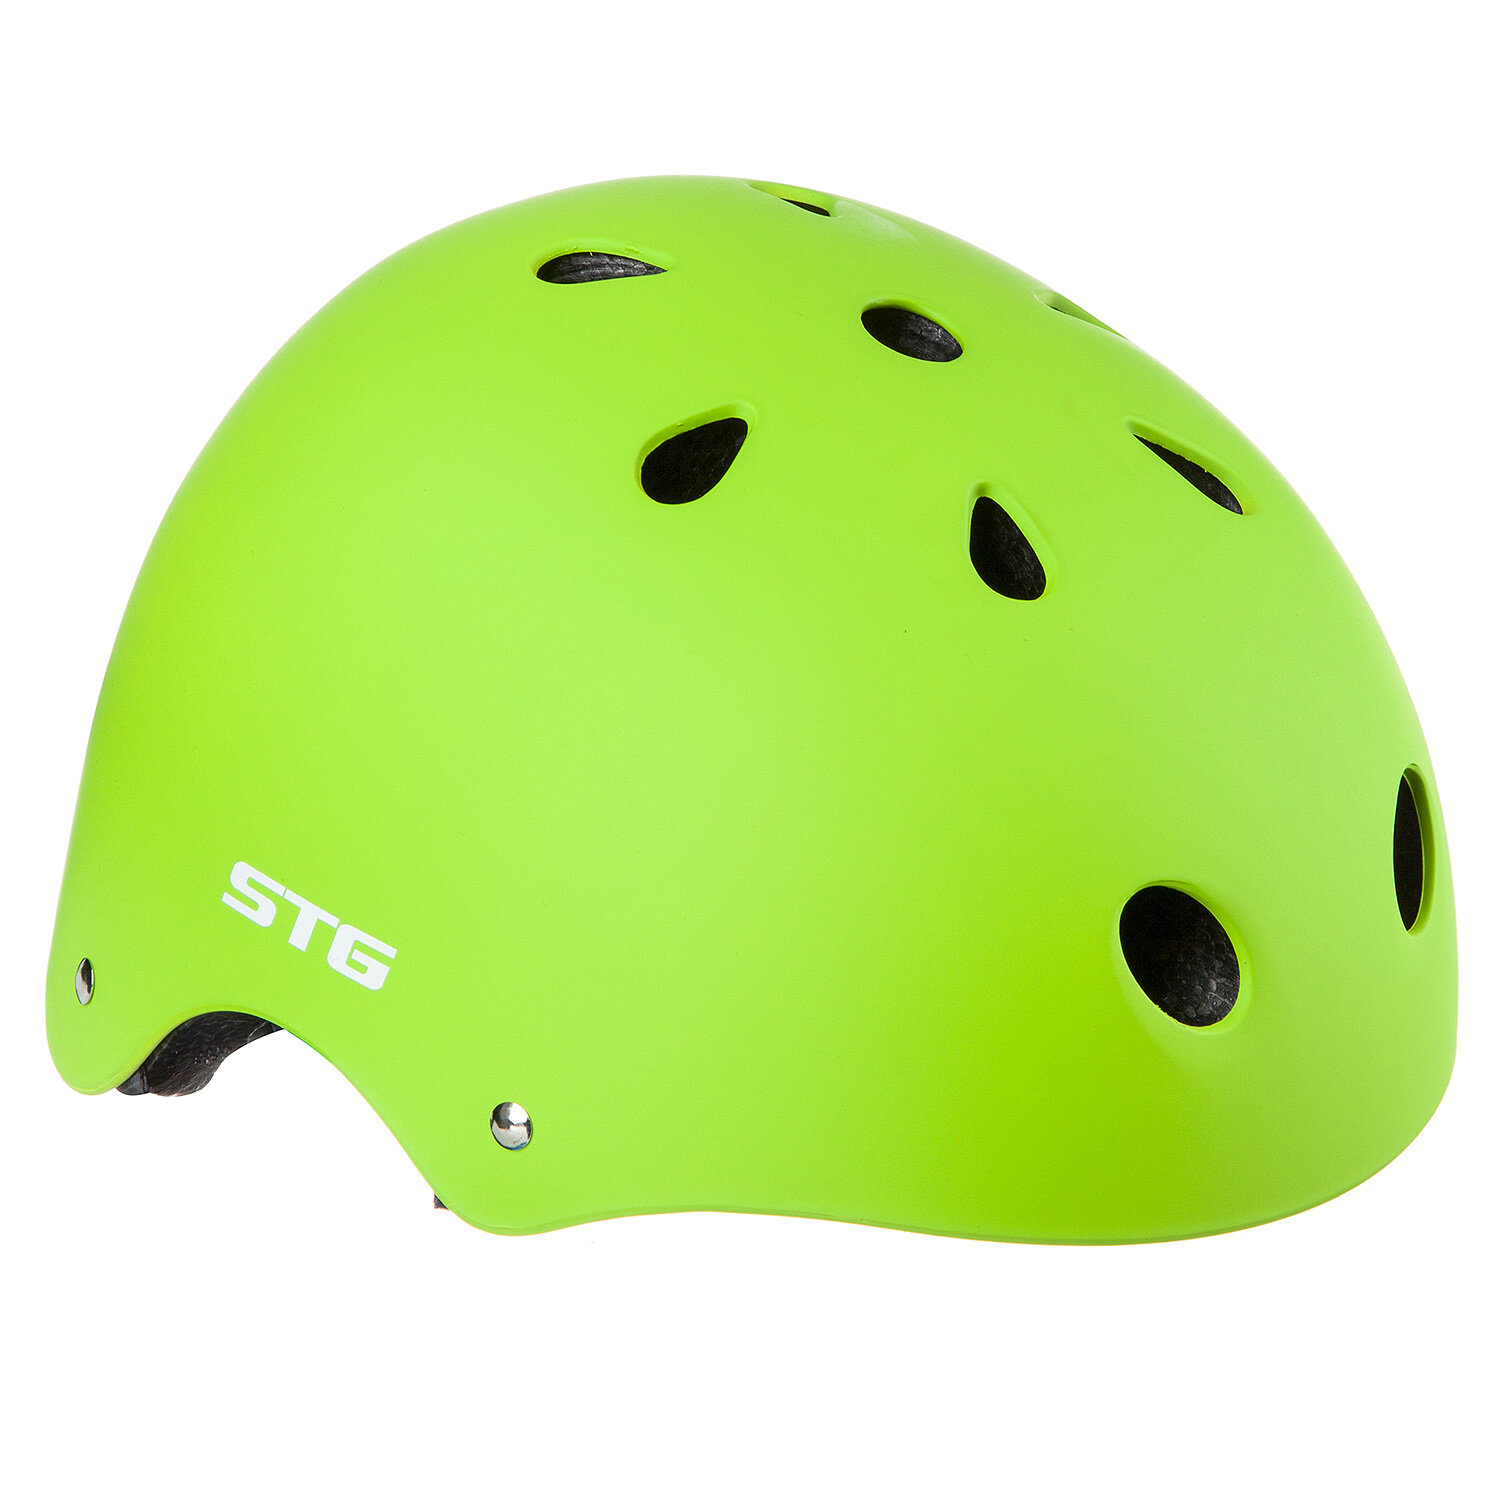 Шлем STG MTV12 (Шлем STG , модель MTV12, размер M(55-58)cm салатовый, с фикс застежкой.)